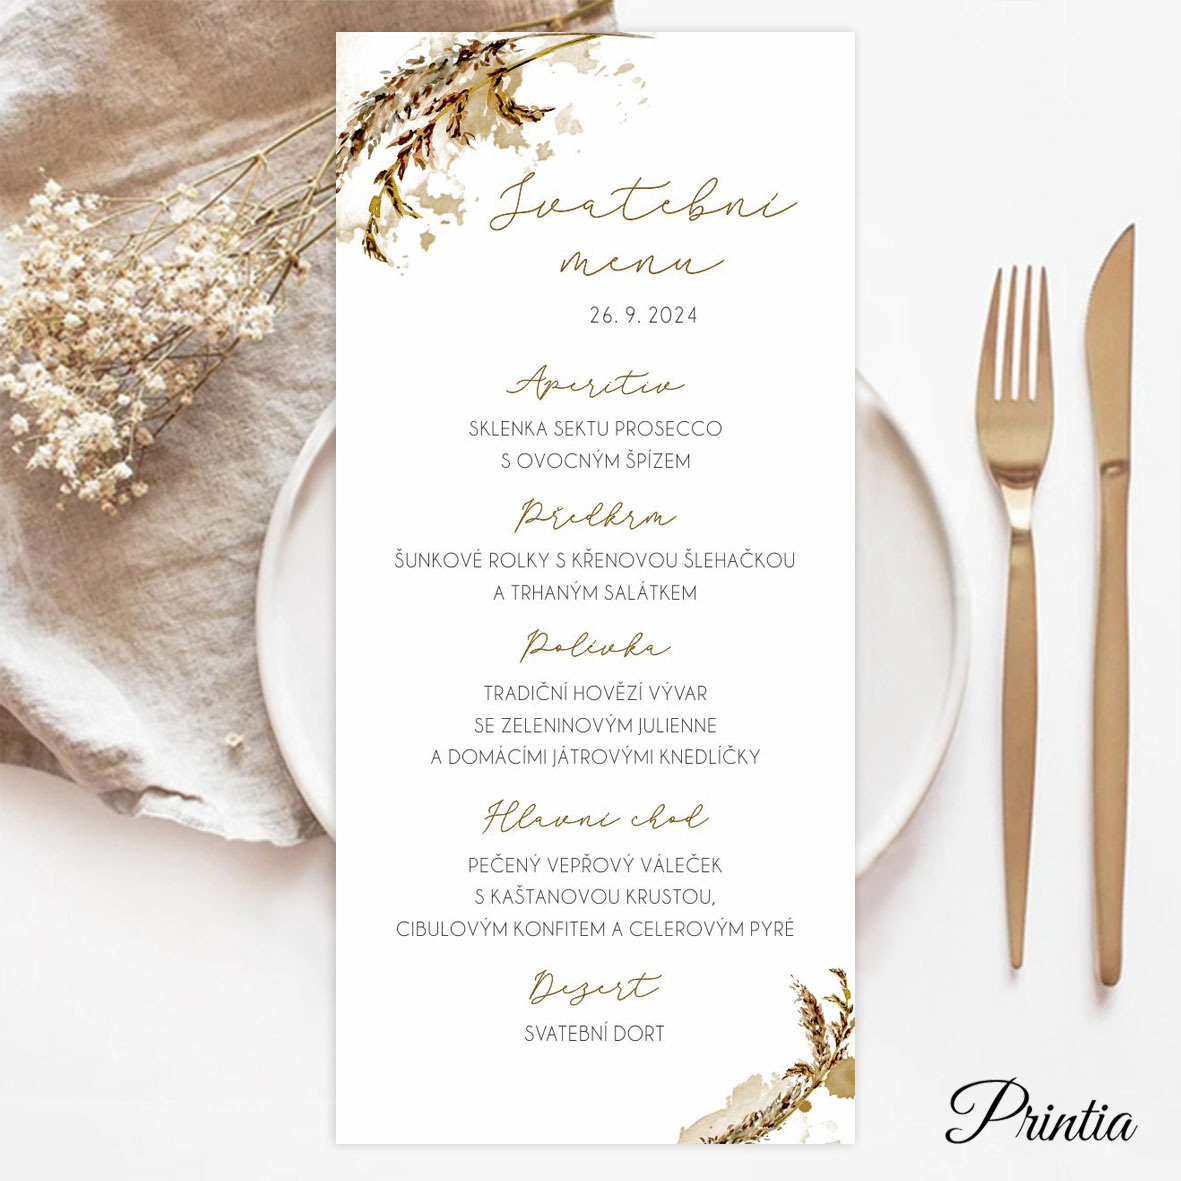 Watercolor floral wedding menu